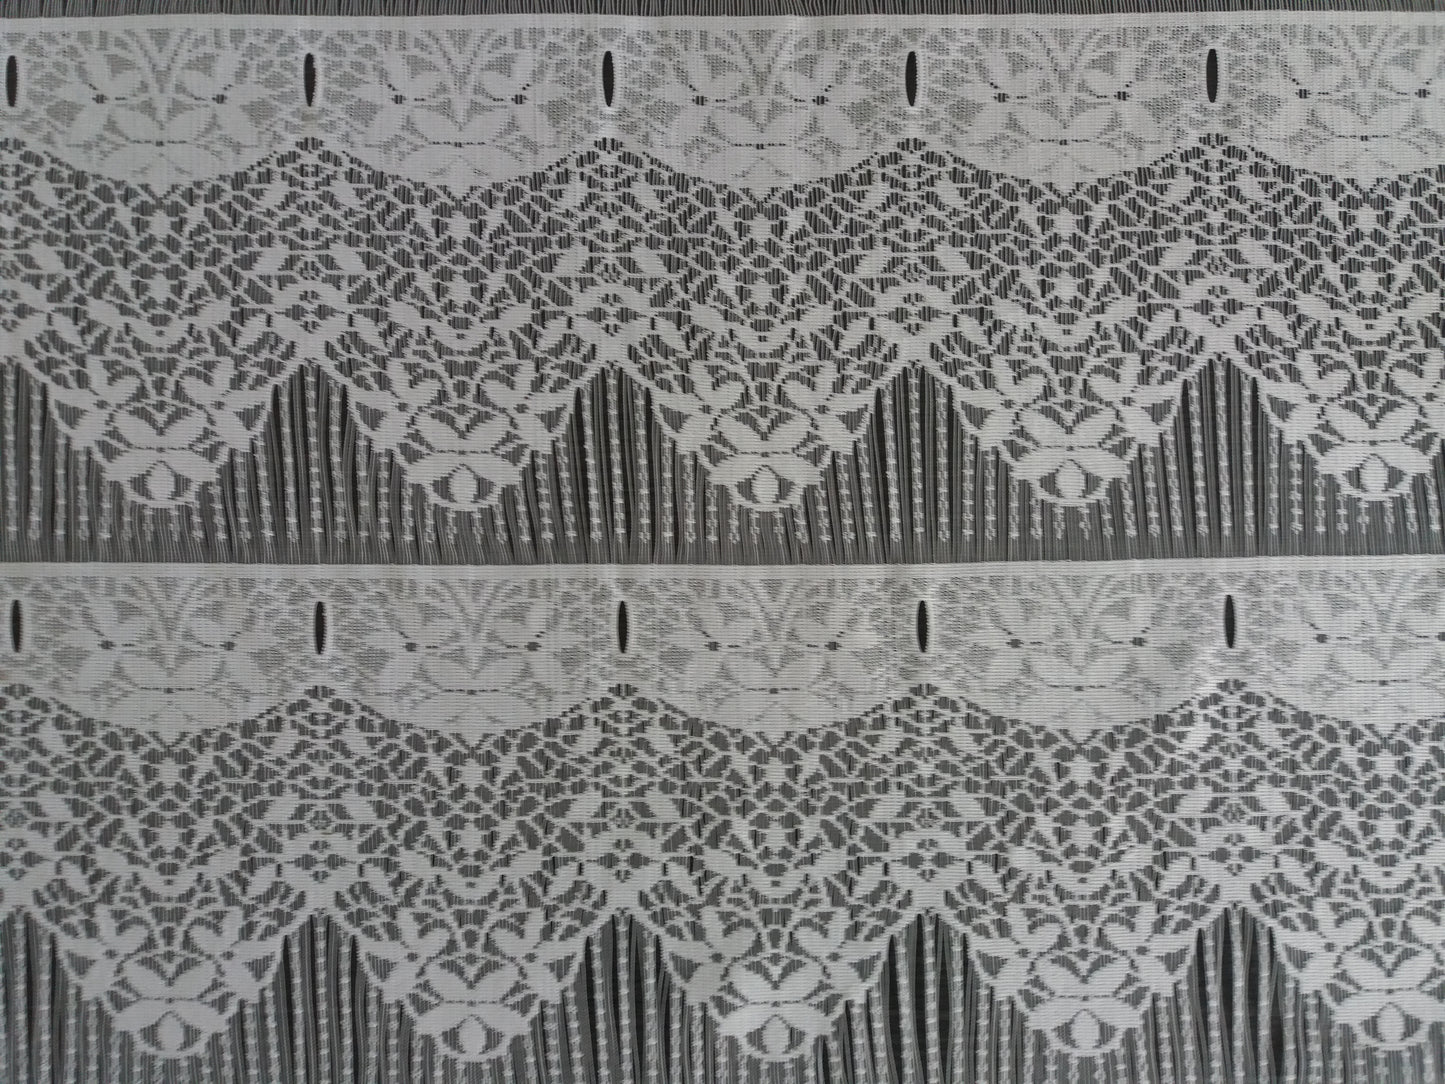 Rideau brise-vue blanc 60 cm de largeur motif Floralie – MarieTony